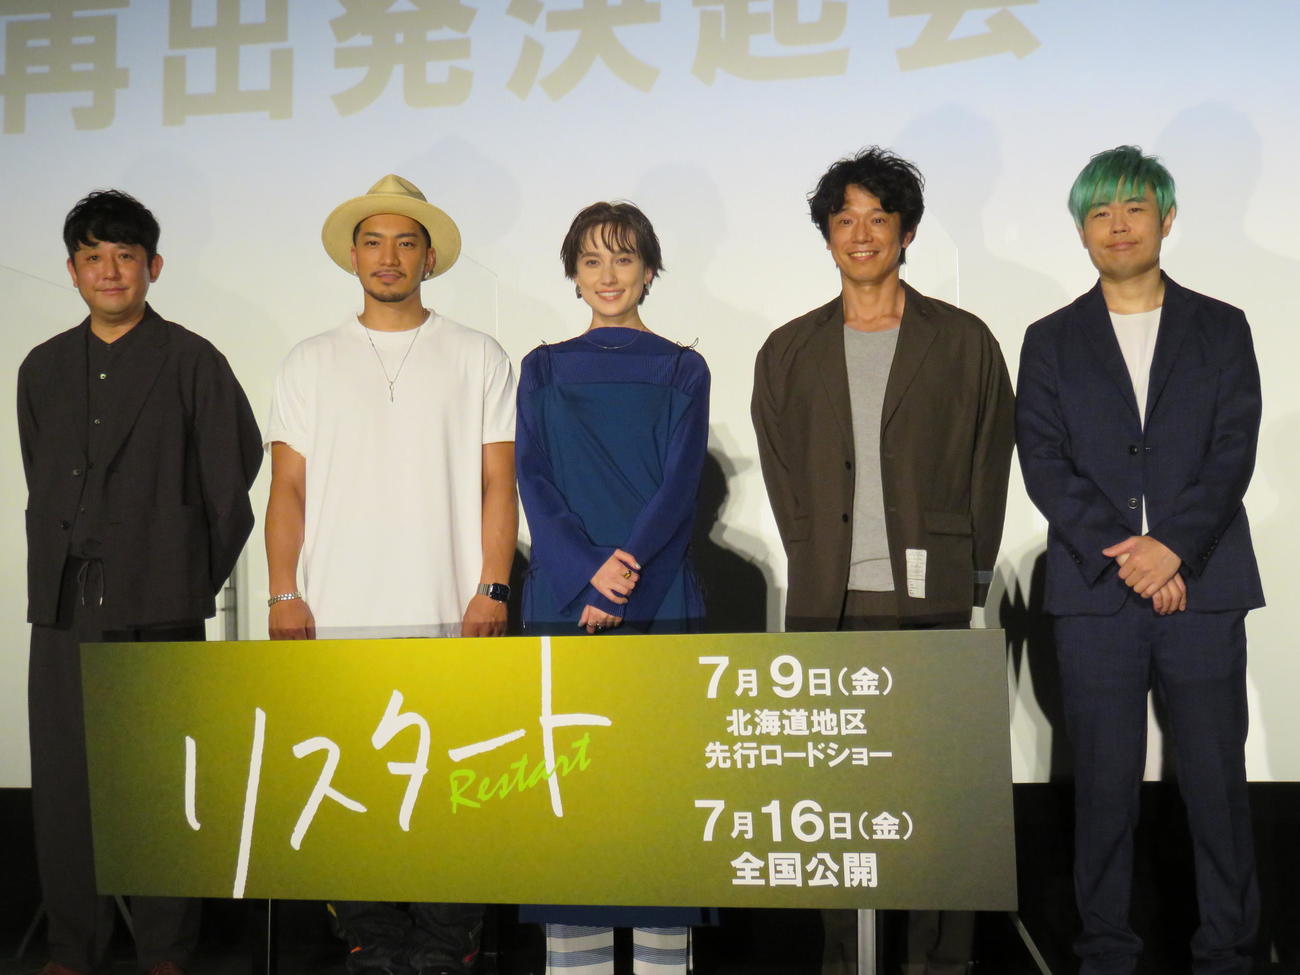 映画「リスタート」のイベントに出席した（左から）松田大輔、SWAY、EMILY、庄司智春、品川ヒロシ監督